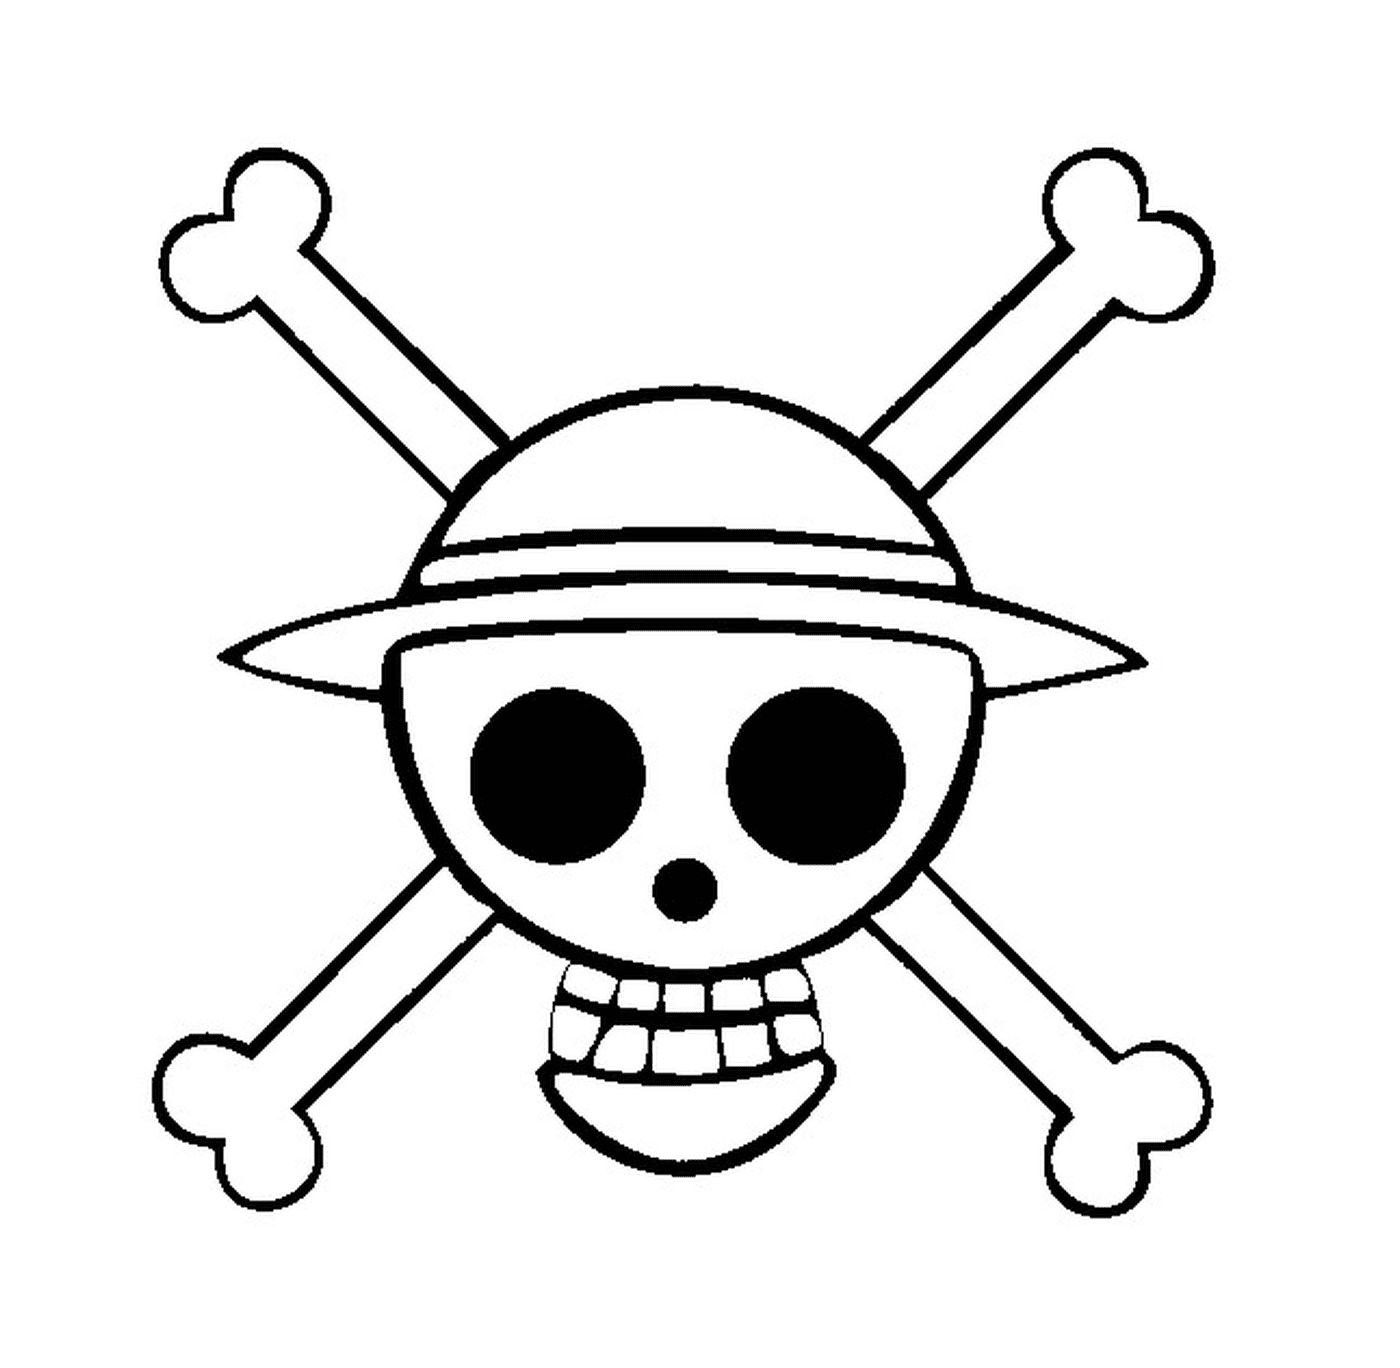   Logo One Piece, symbole pirate 